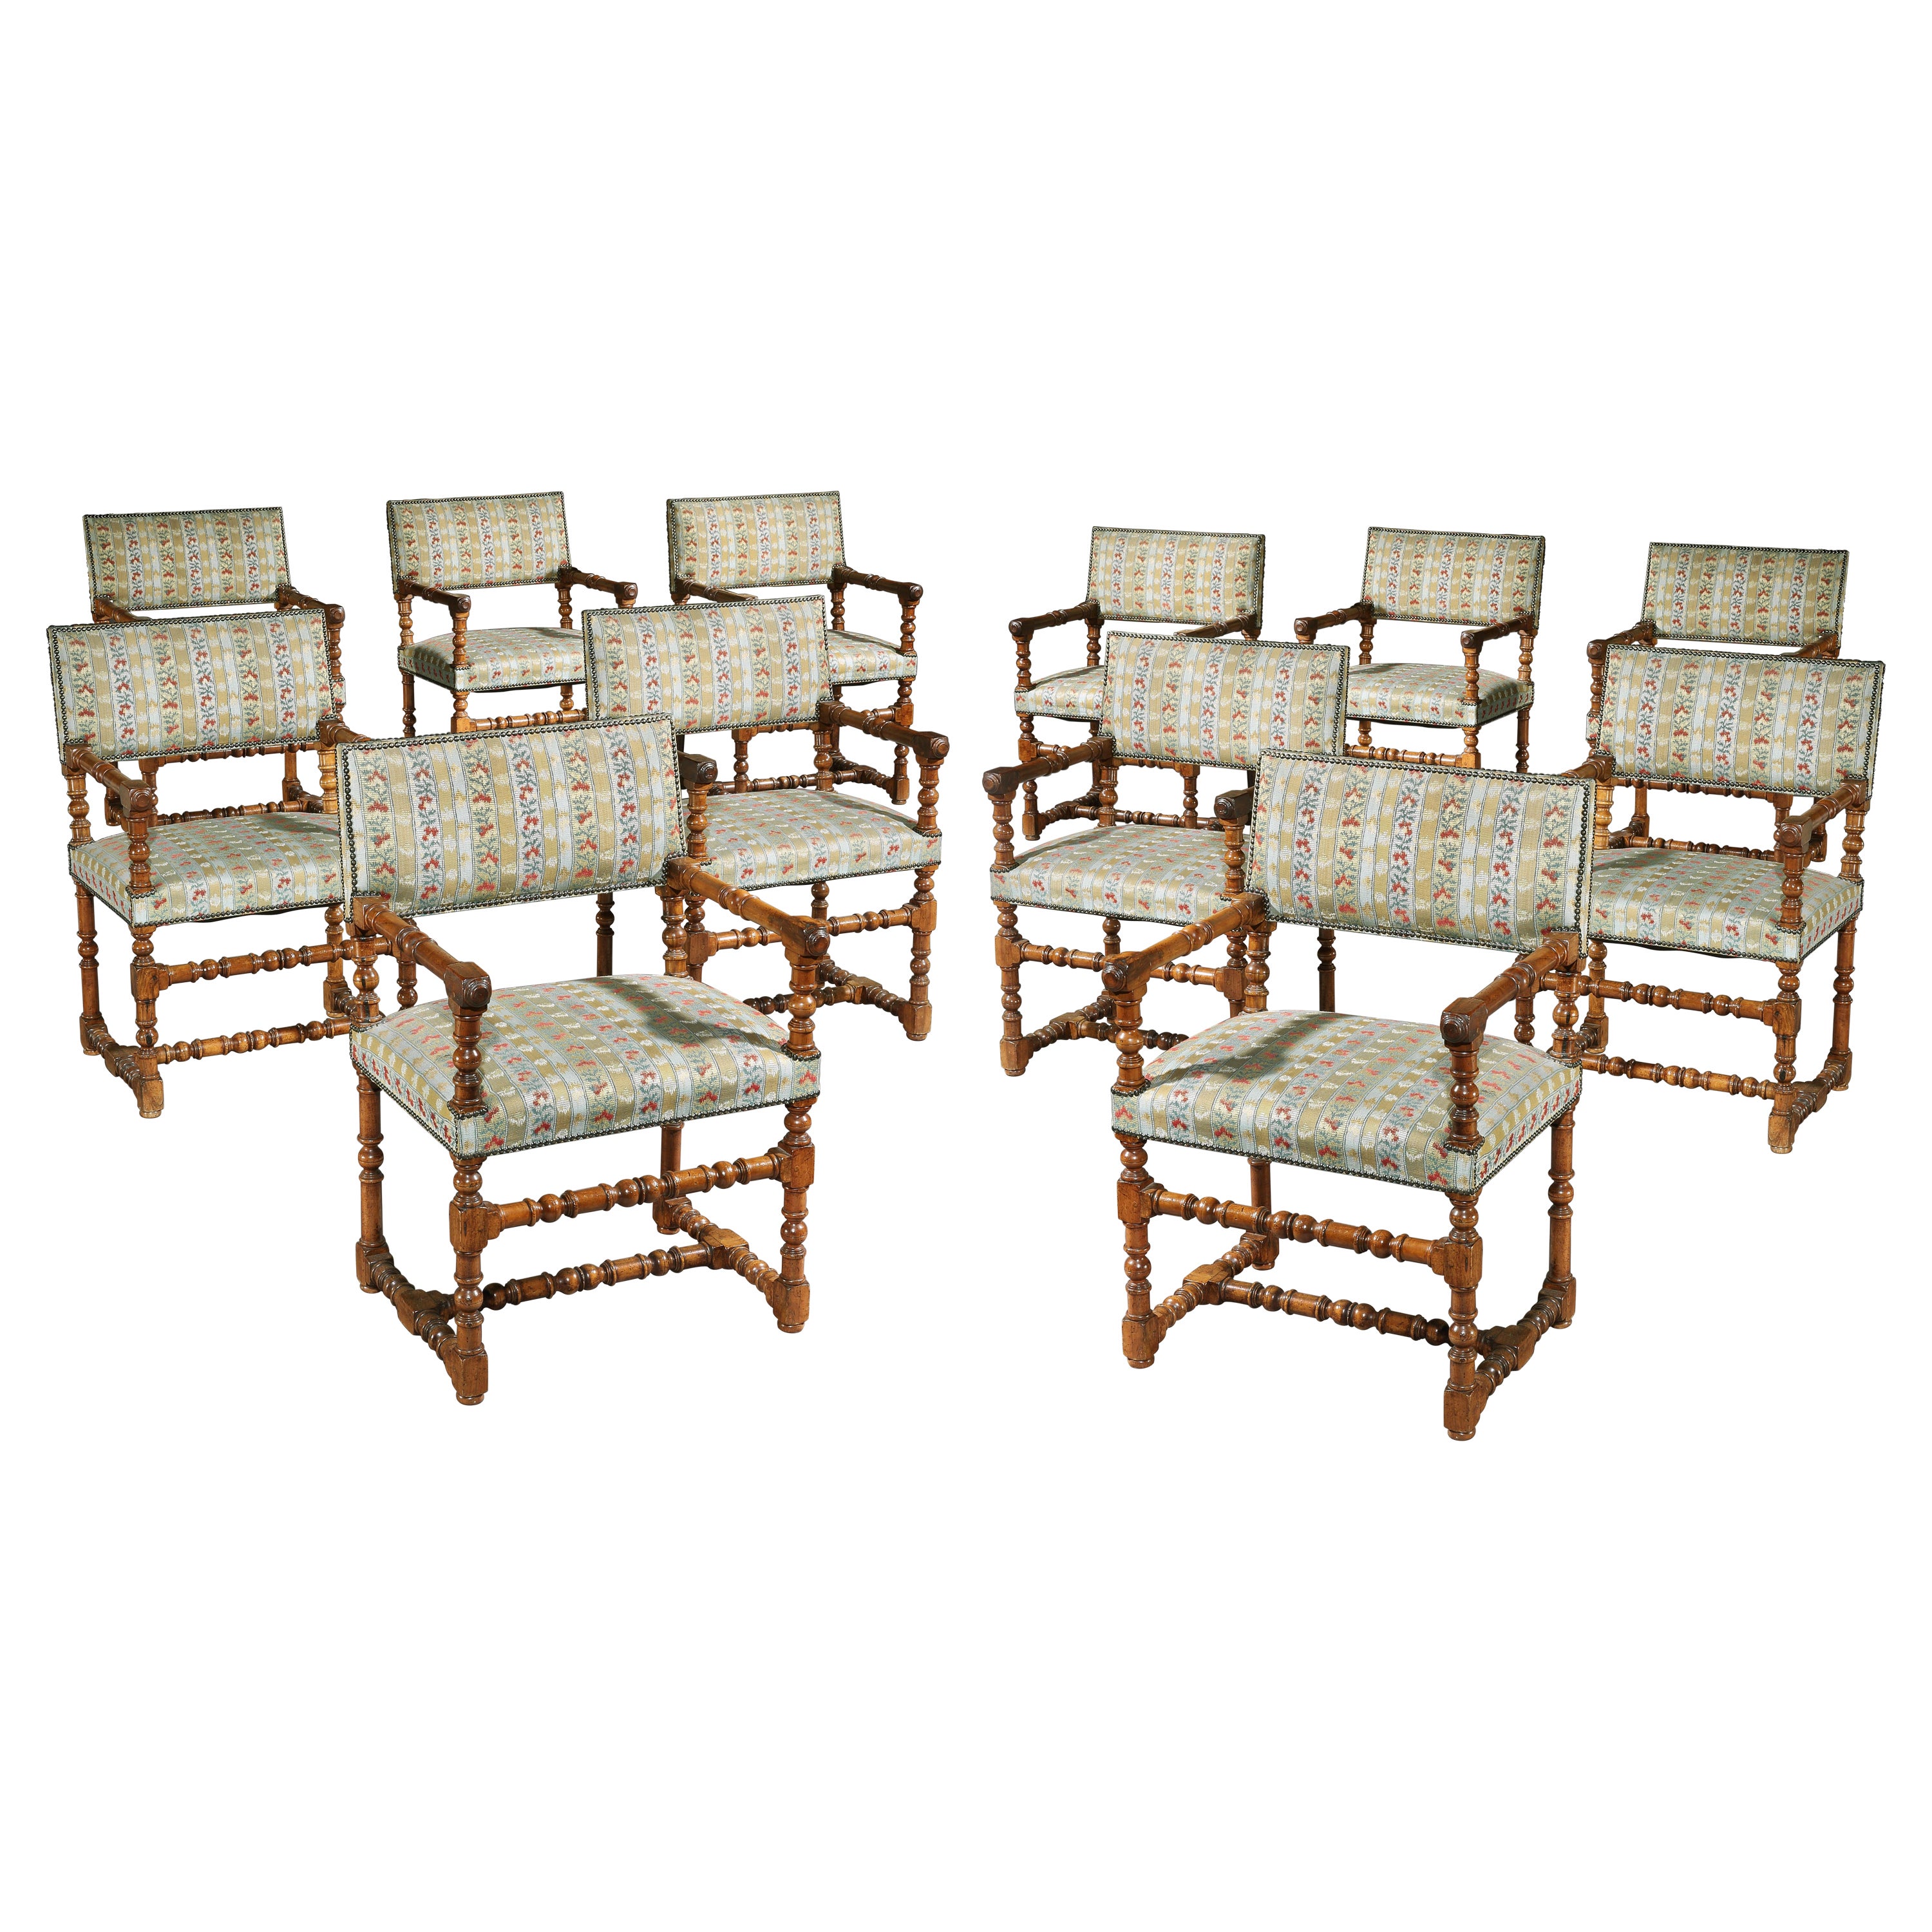 Douze ensembles de chaises et fauteuils de salle à manger de style Renaissance rembourrés en bois fruitier ouvert